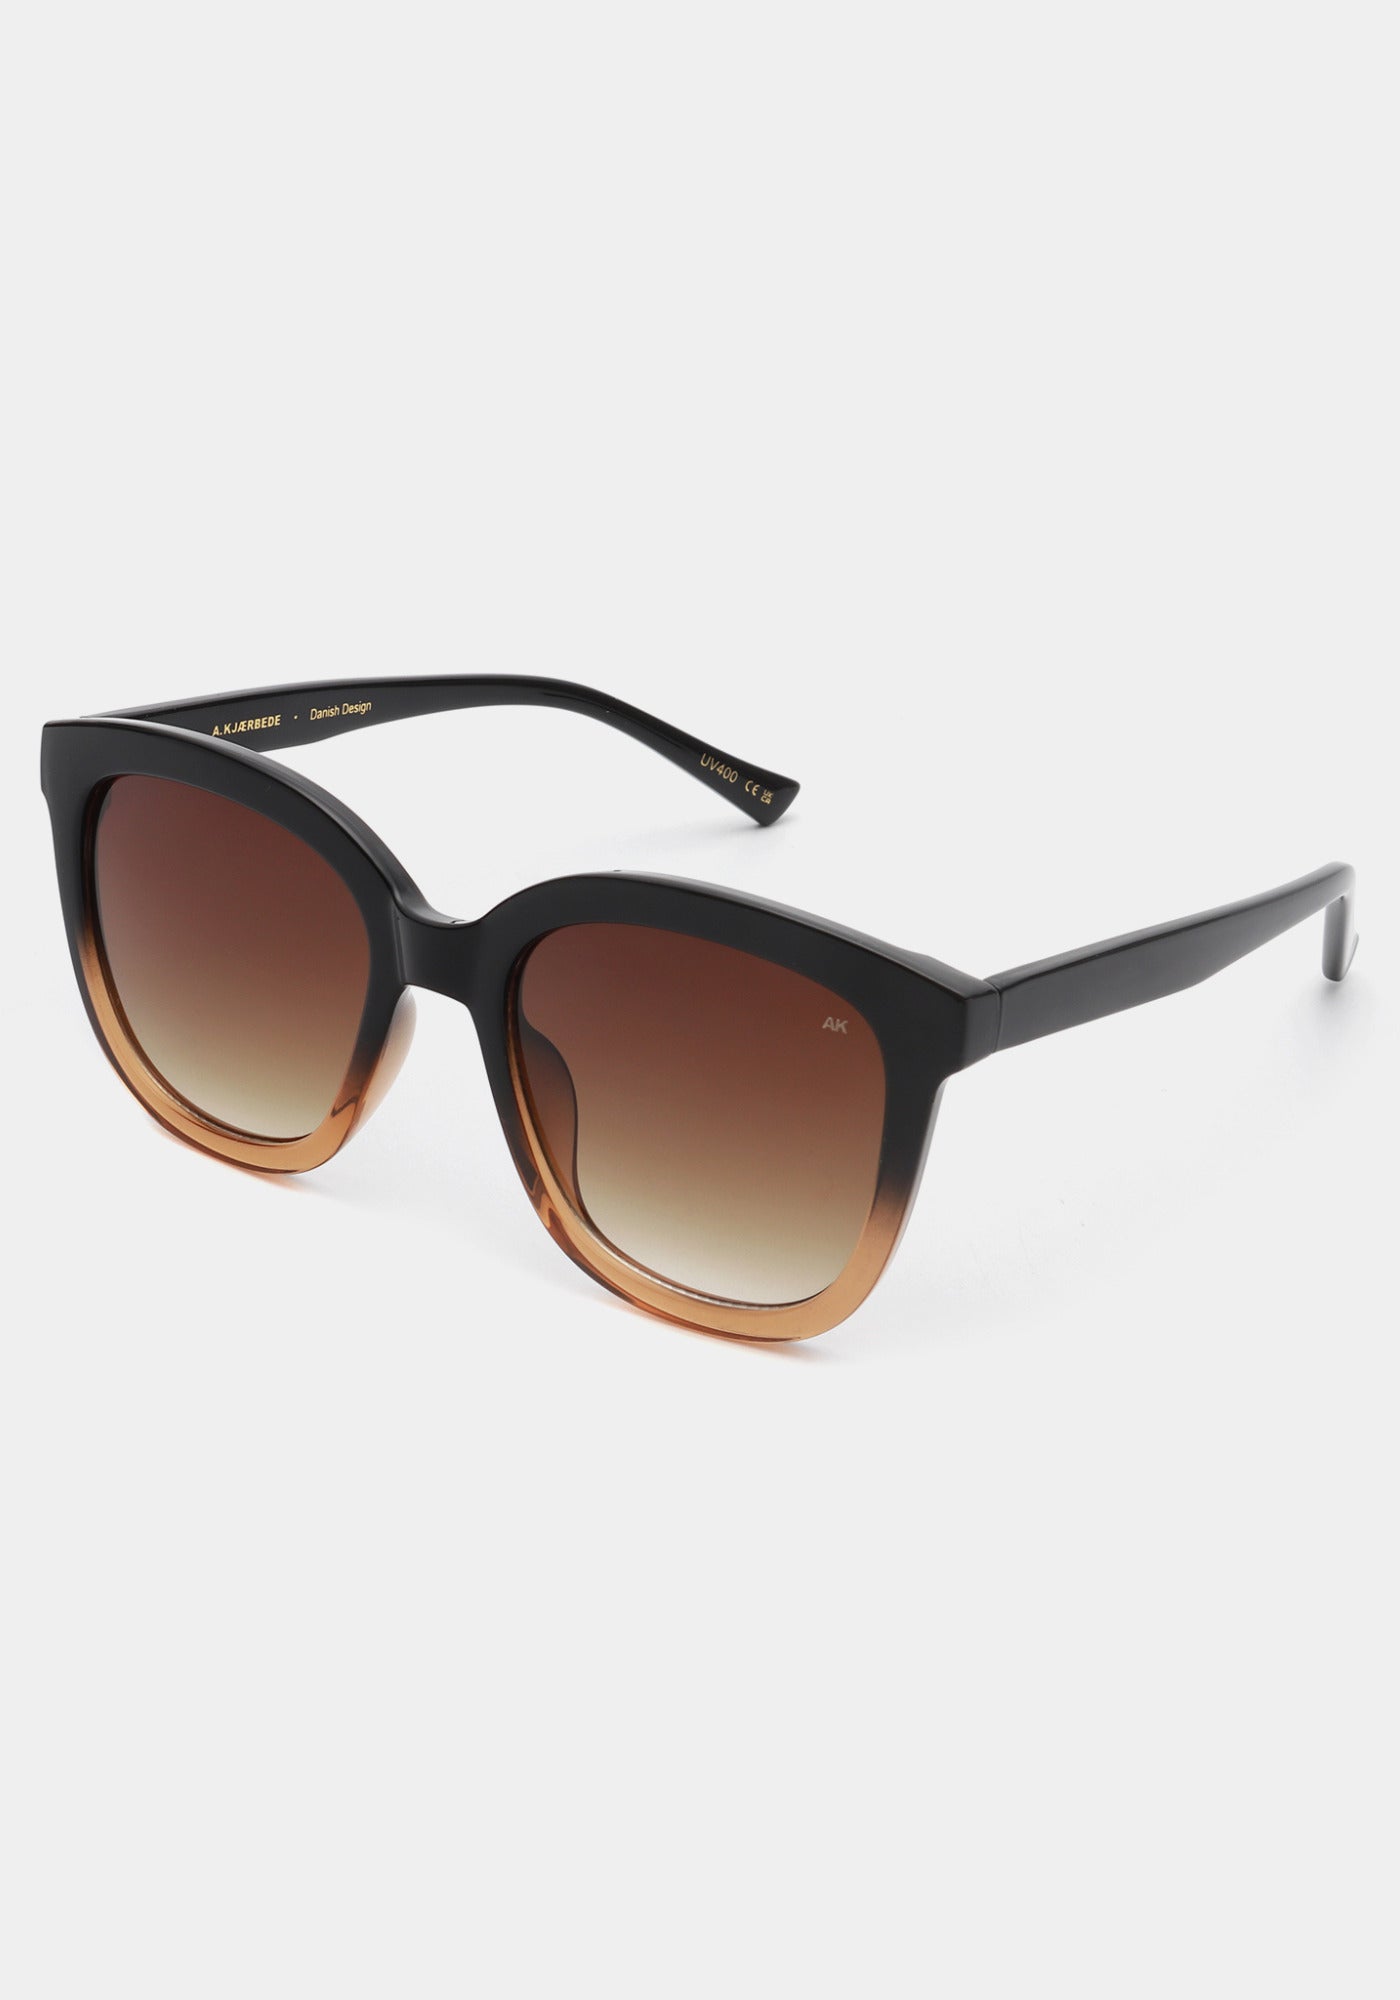 Les lunettes de soleil Billy black brown transparent de chez A.Kjaerbede